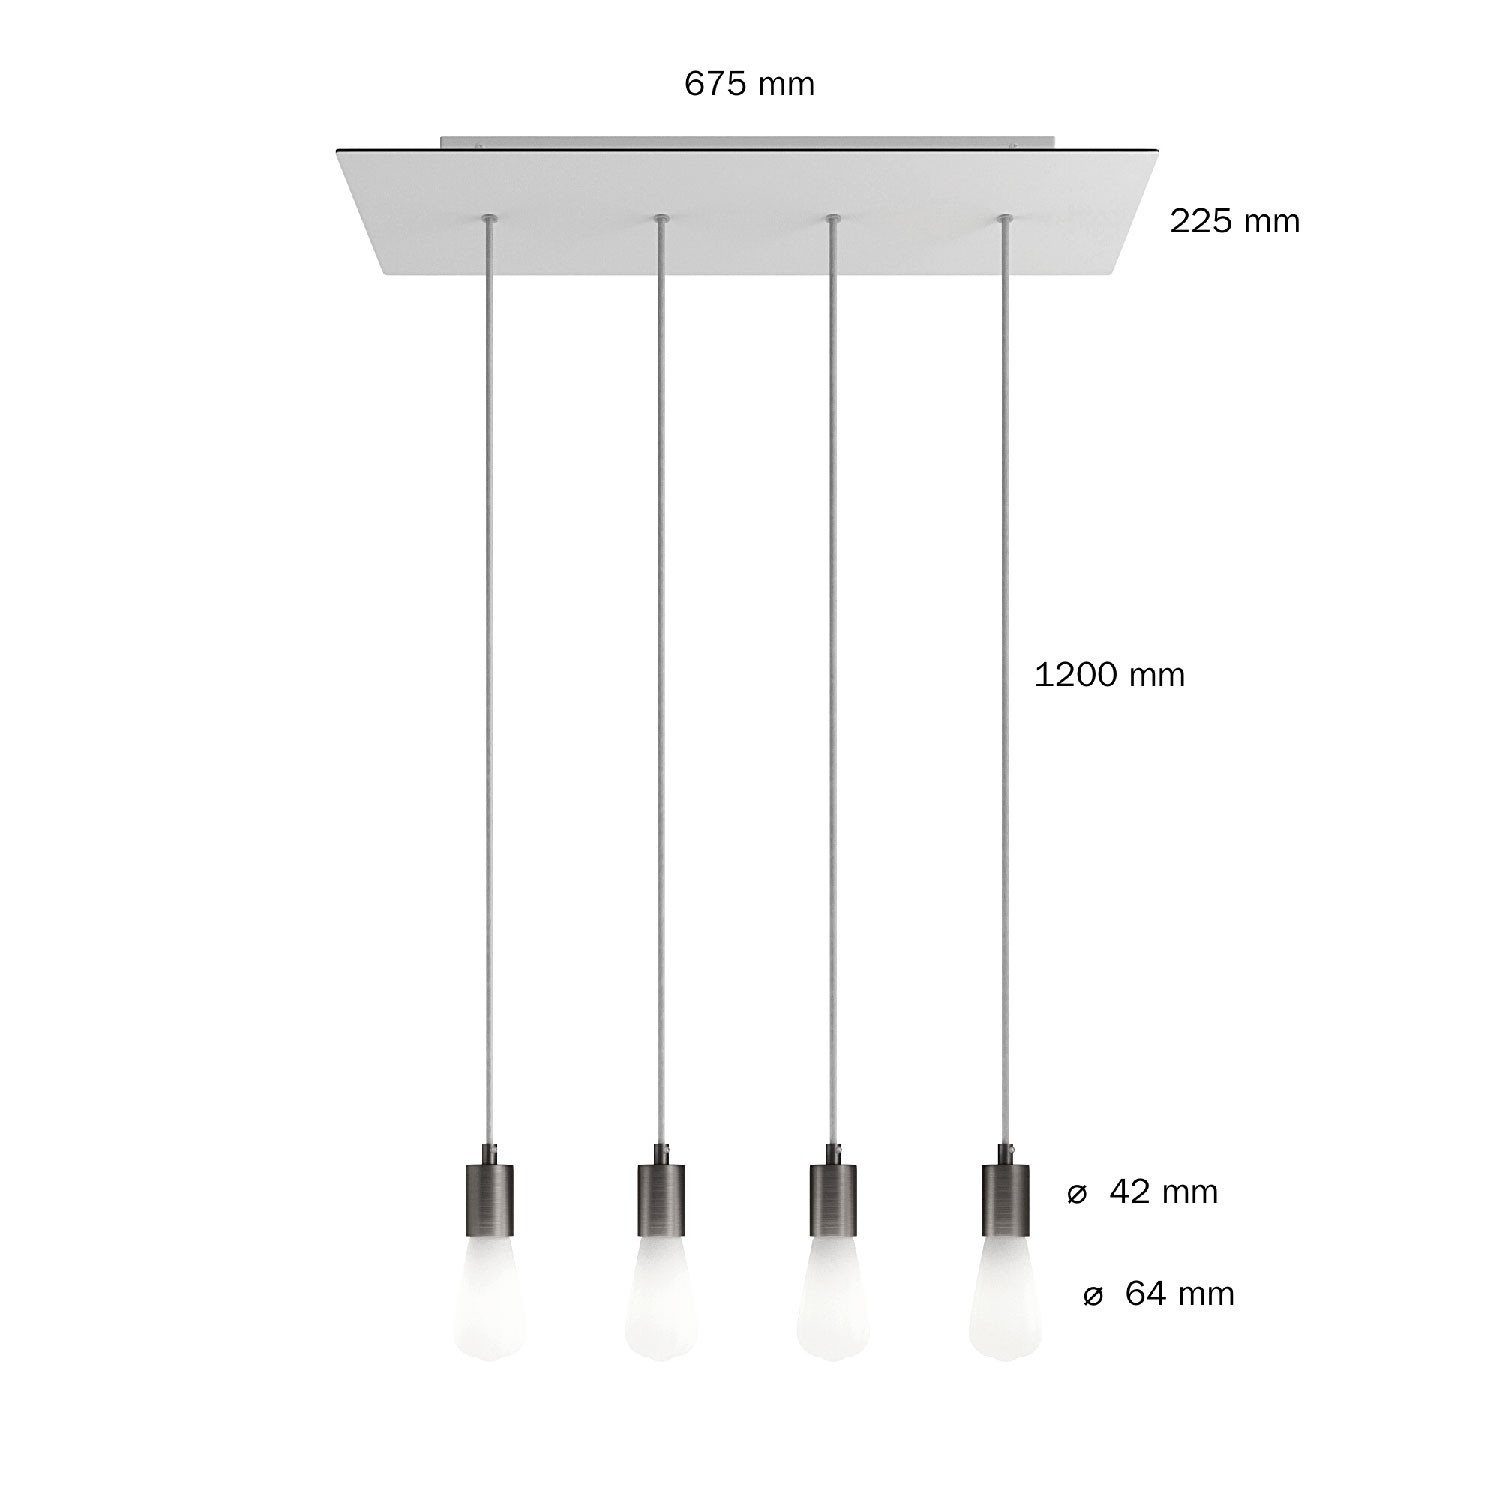 Viseća svjetiljka s 4 ispusta, pravokutnom XXL Rose-One rozetom 675 mm, tekstilnim kabelom, komponente u bojama metala.